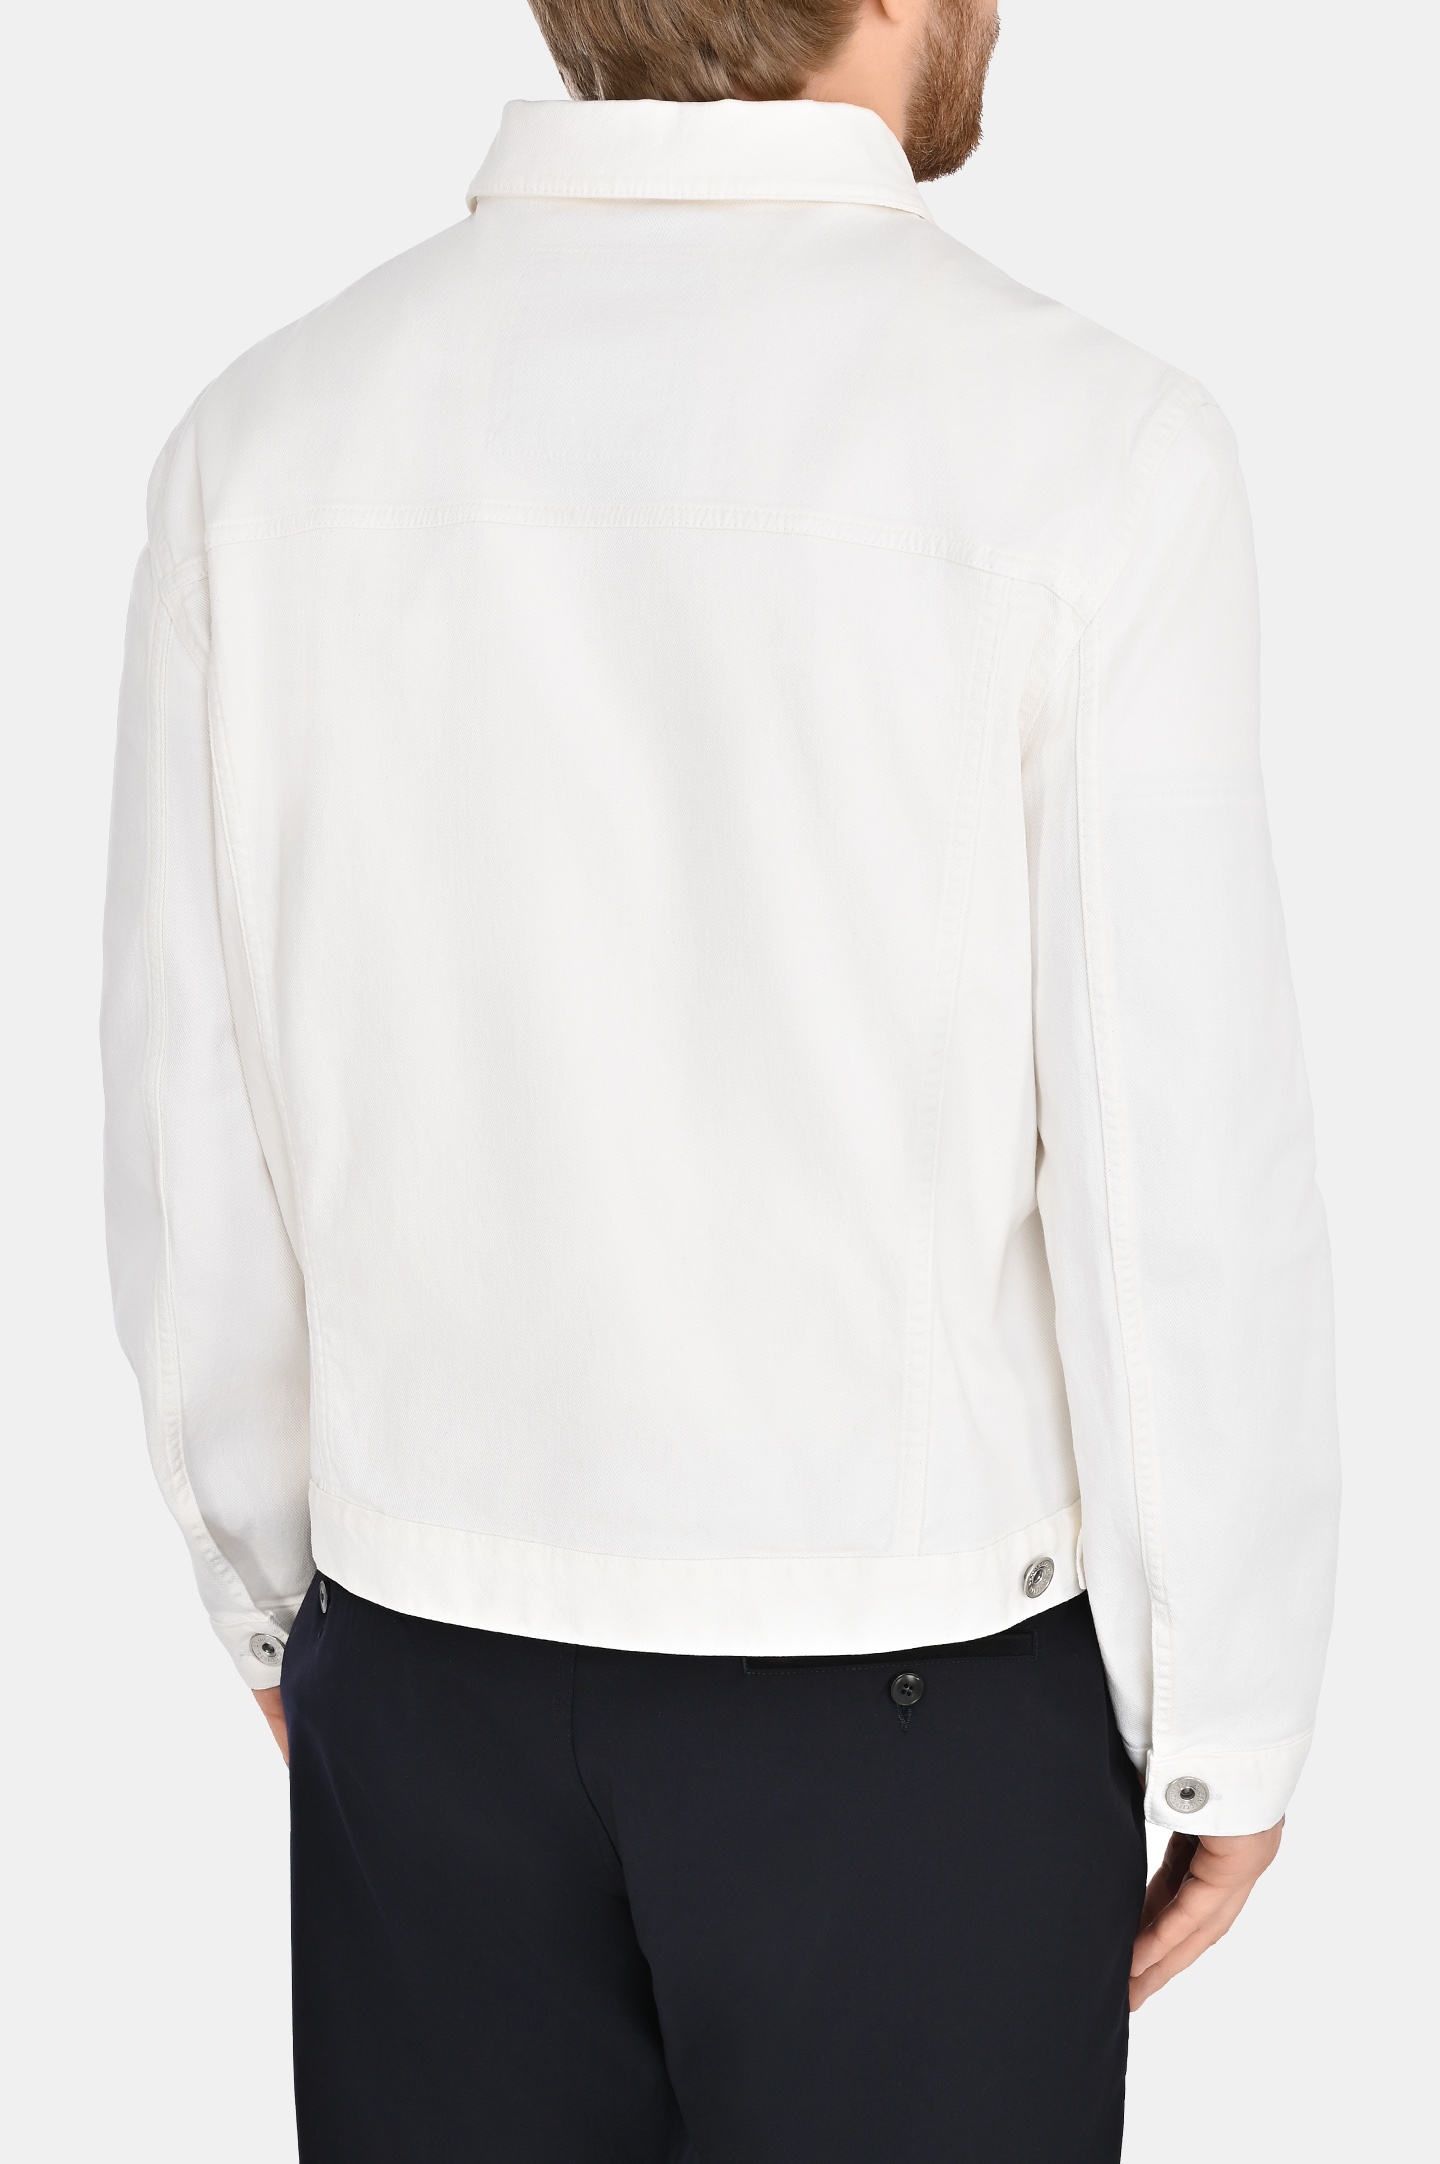 Джинсовая куртка с карманами BRUNELLO  CUCINELLI M277P6900, цвет: Белый, Мужской